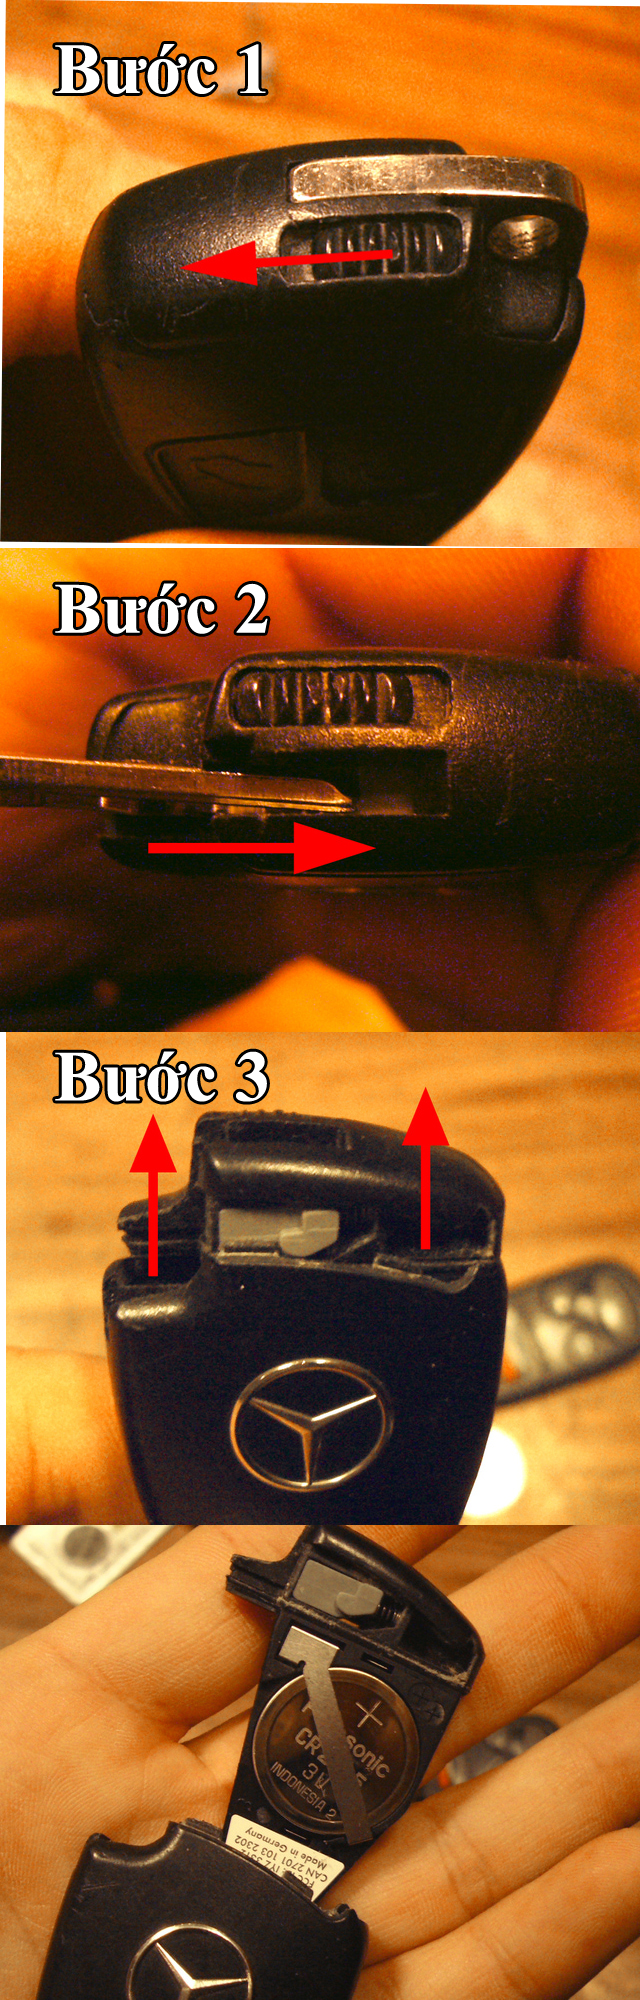 Cách thay pin chìa khóa mercedes